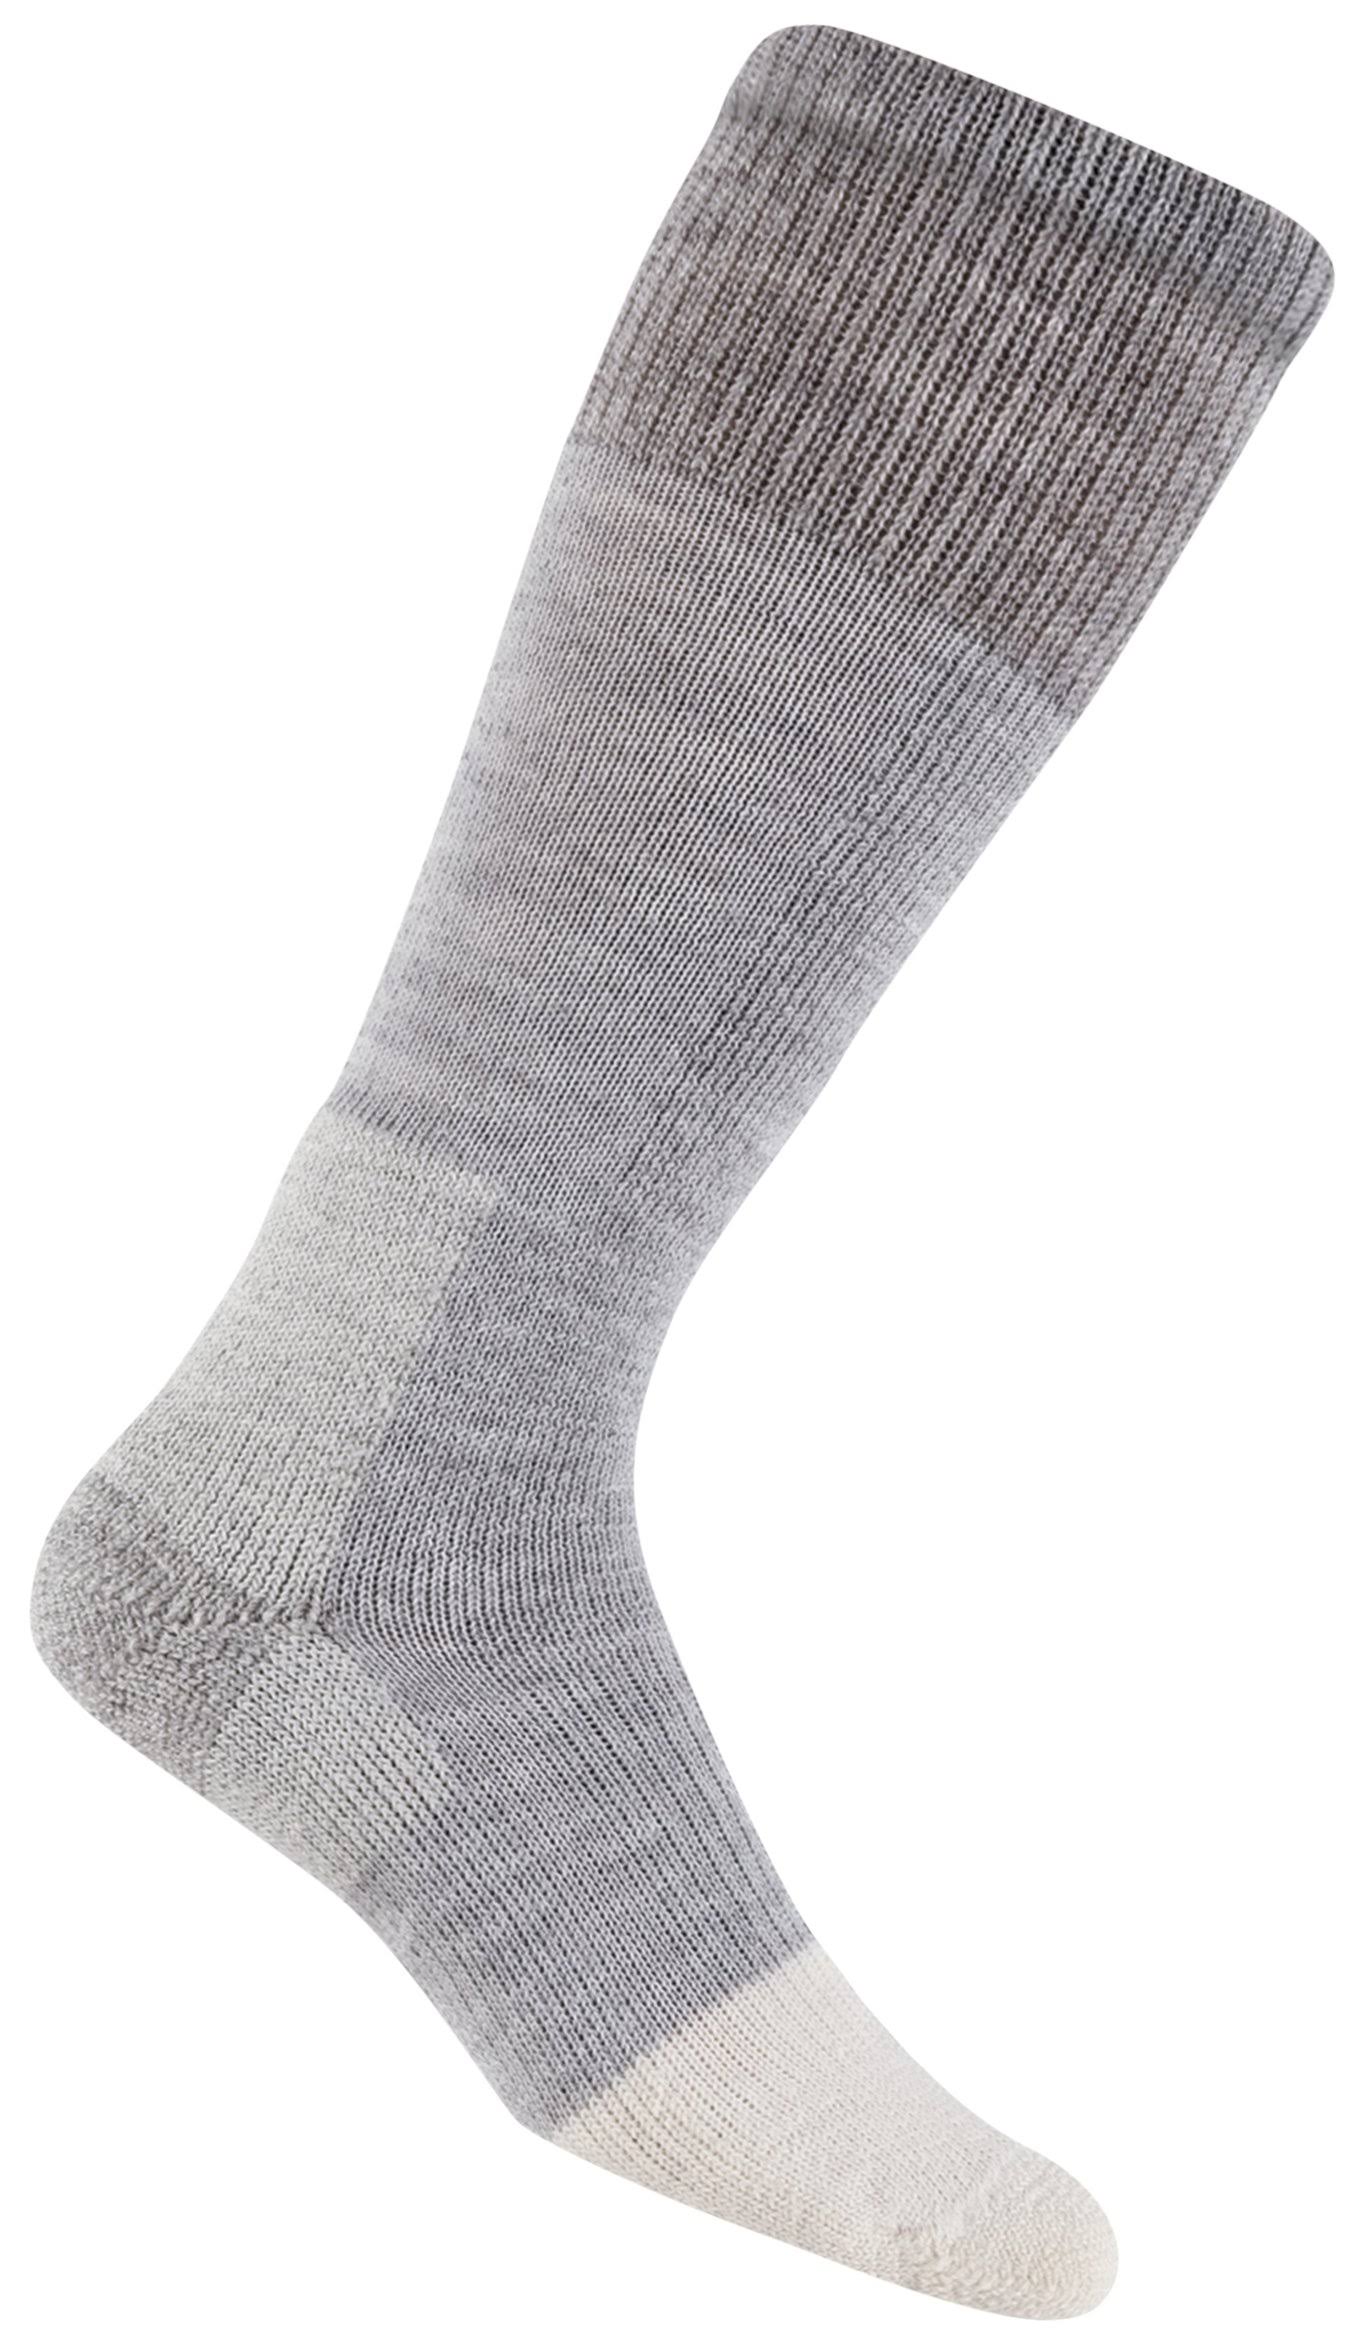 Thorlo Extreme Cold Socks - Grey, Size: UK 5-8